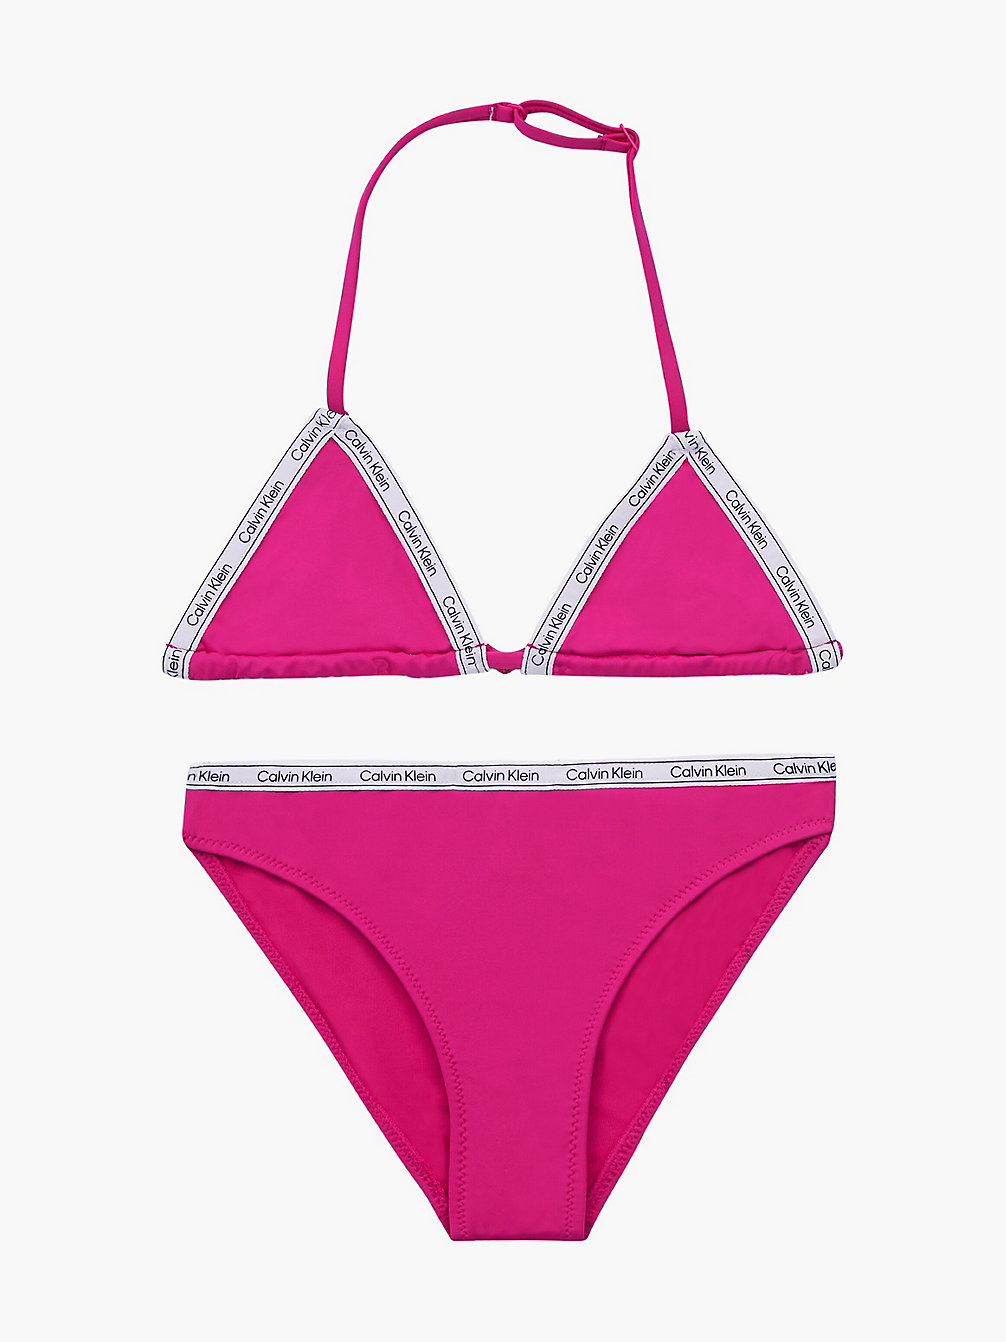 ROYAL PINK > Bikini-Set Mit Triangel-Top Für Mädchen - Logo Tape > undefined Maedchen - Calvin Klein